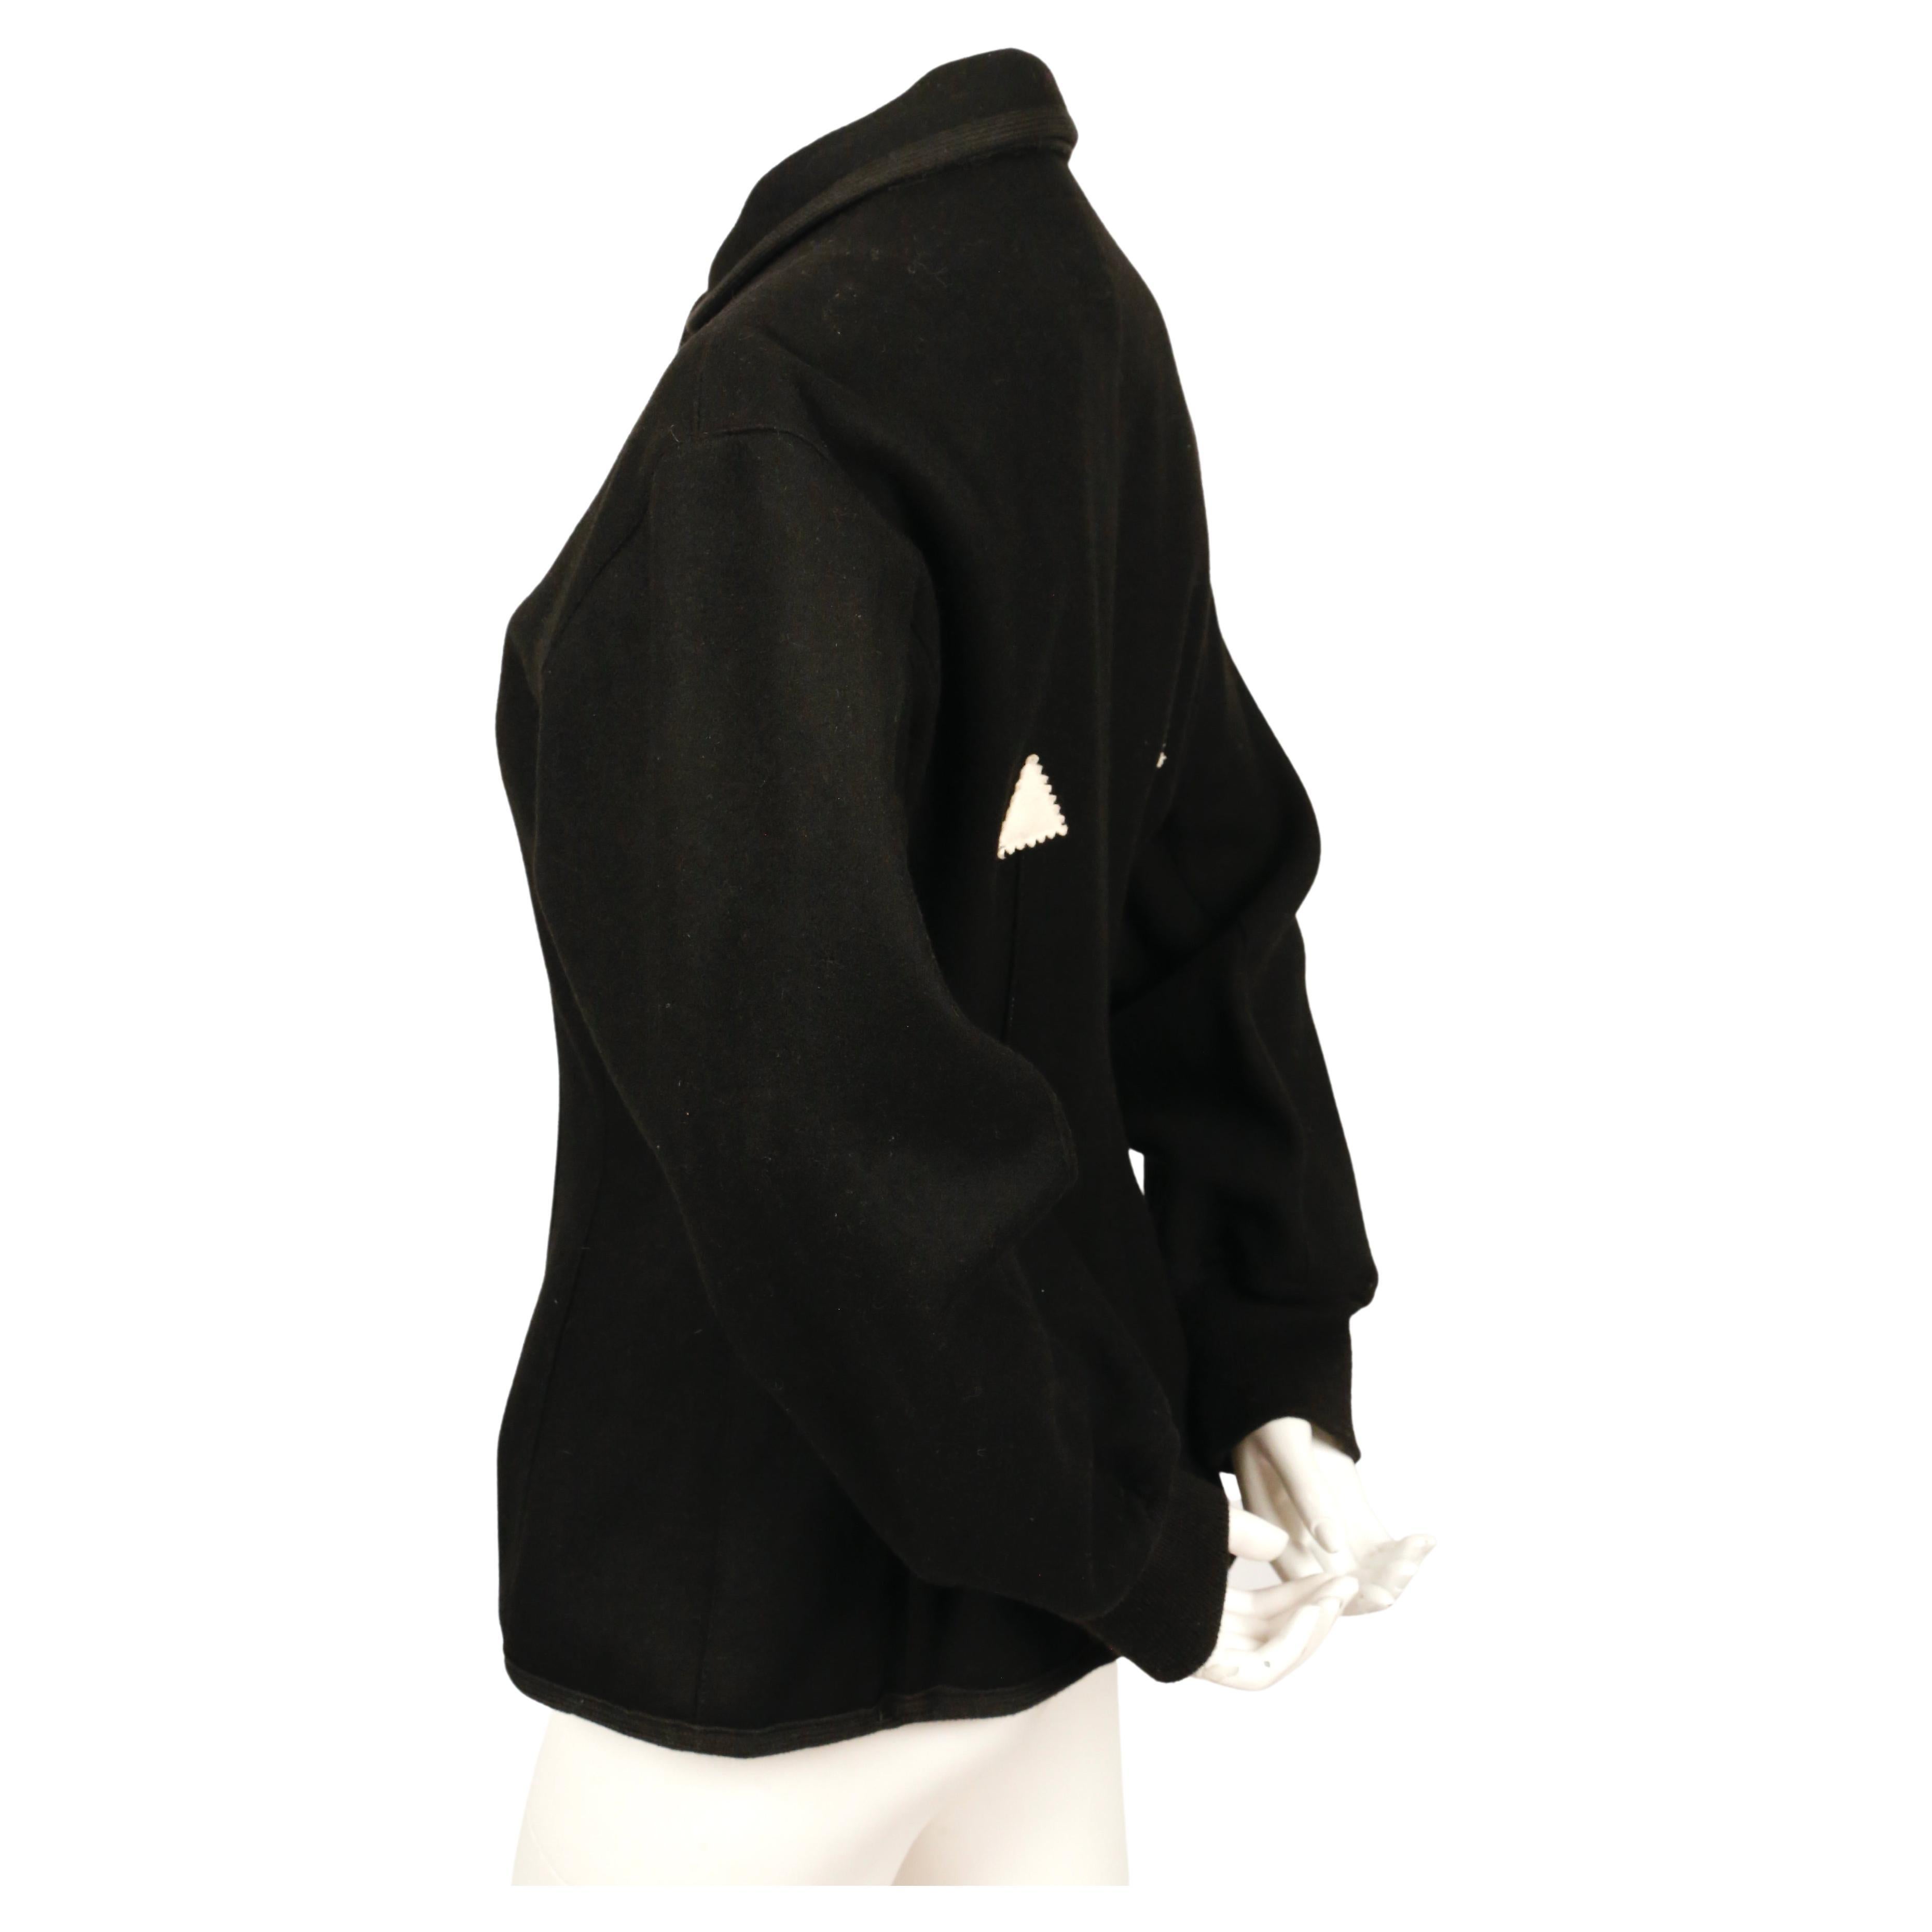 Schwarze Korsettjacke aus gefilzter Wolle mit schwarzen Paspeln, gerippten Ärmelbündchen und cremefarbenen Zickzack-Dreiecken von Jean Paul Gaultier Junior aus dem Jahr 1988, wie sie auf dem Laufsteg im Herbst 1988 zu sehen war. Etikett mit der